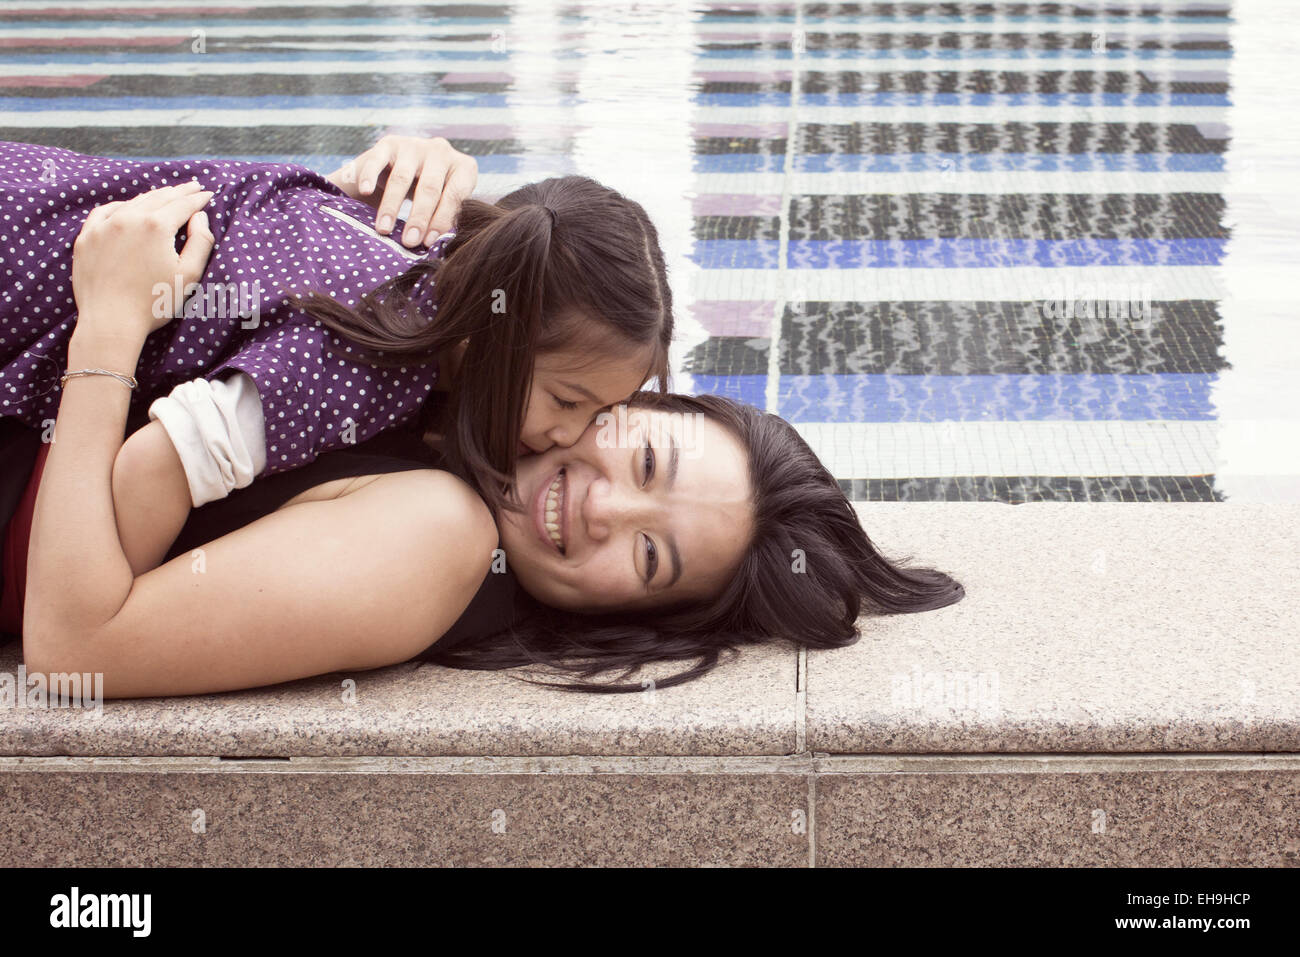 Mère et fille couché ensemble au bord de la fontaine, girl kissing woman's cheek Banque D'Images